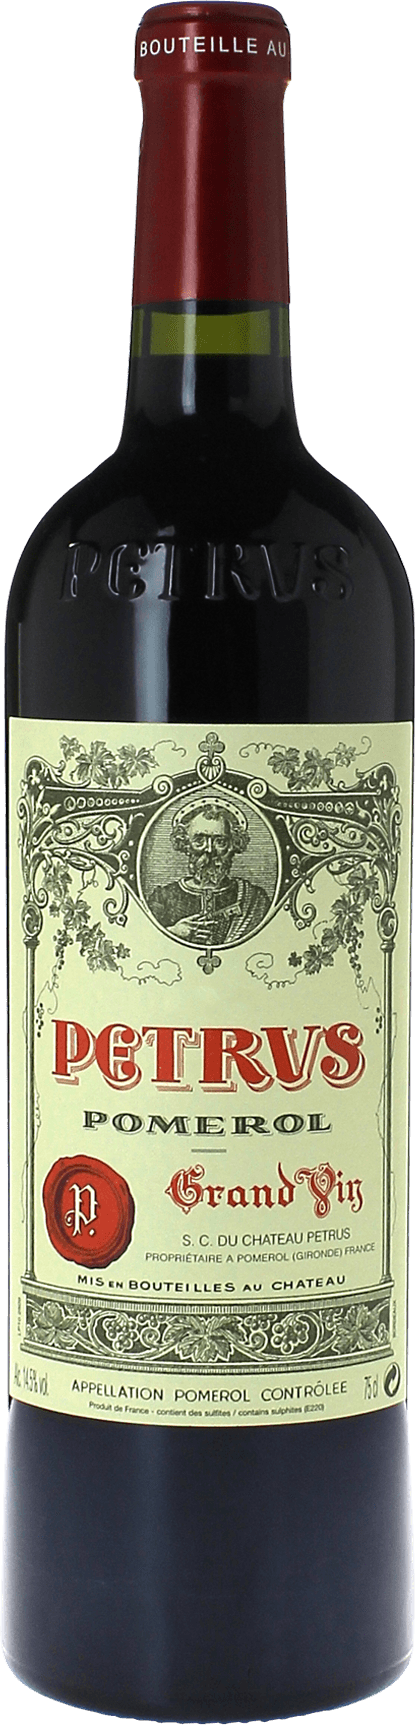 Petrus pomerol 1998  Pomerol, Bordeaux rouge